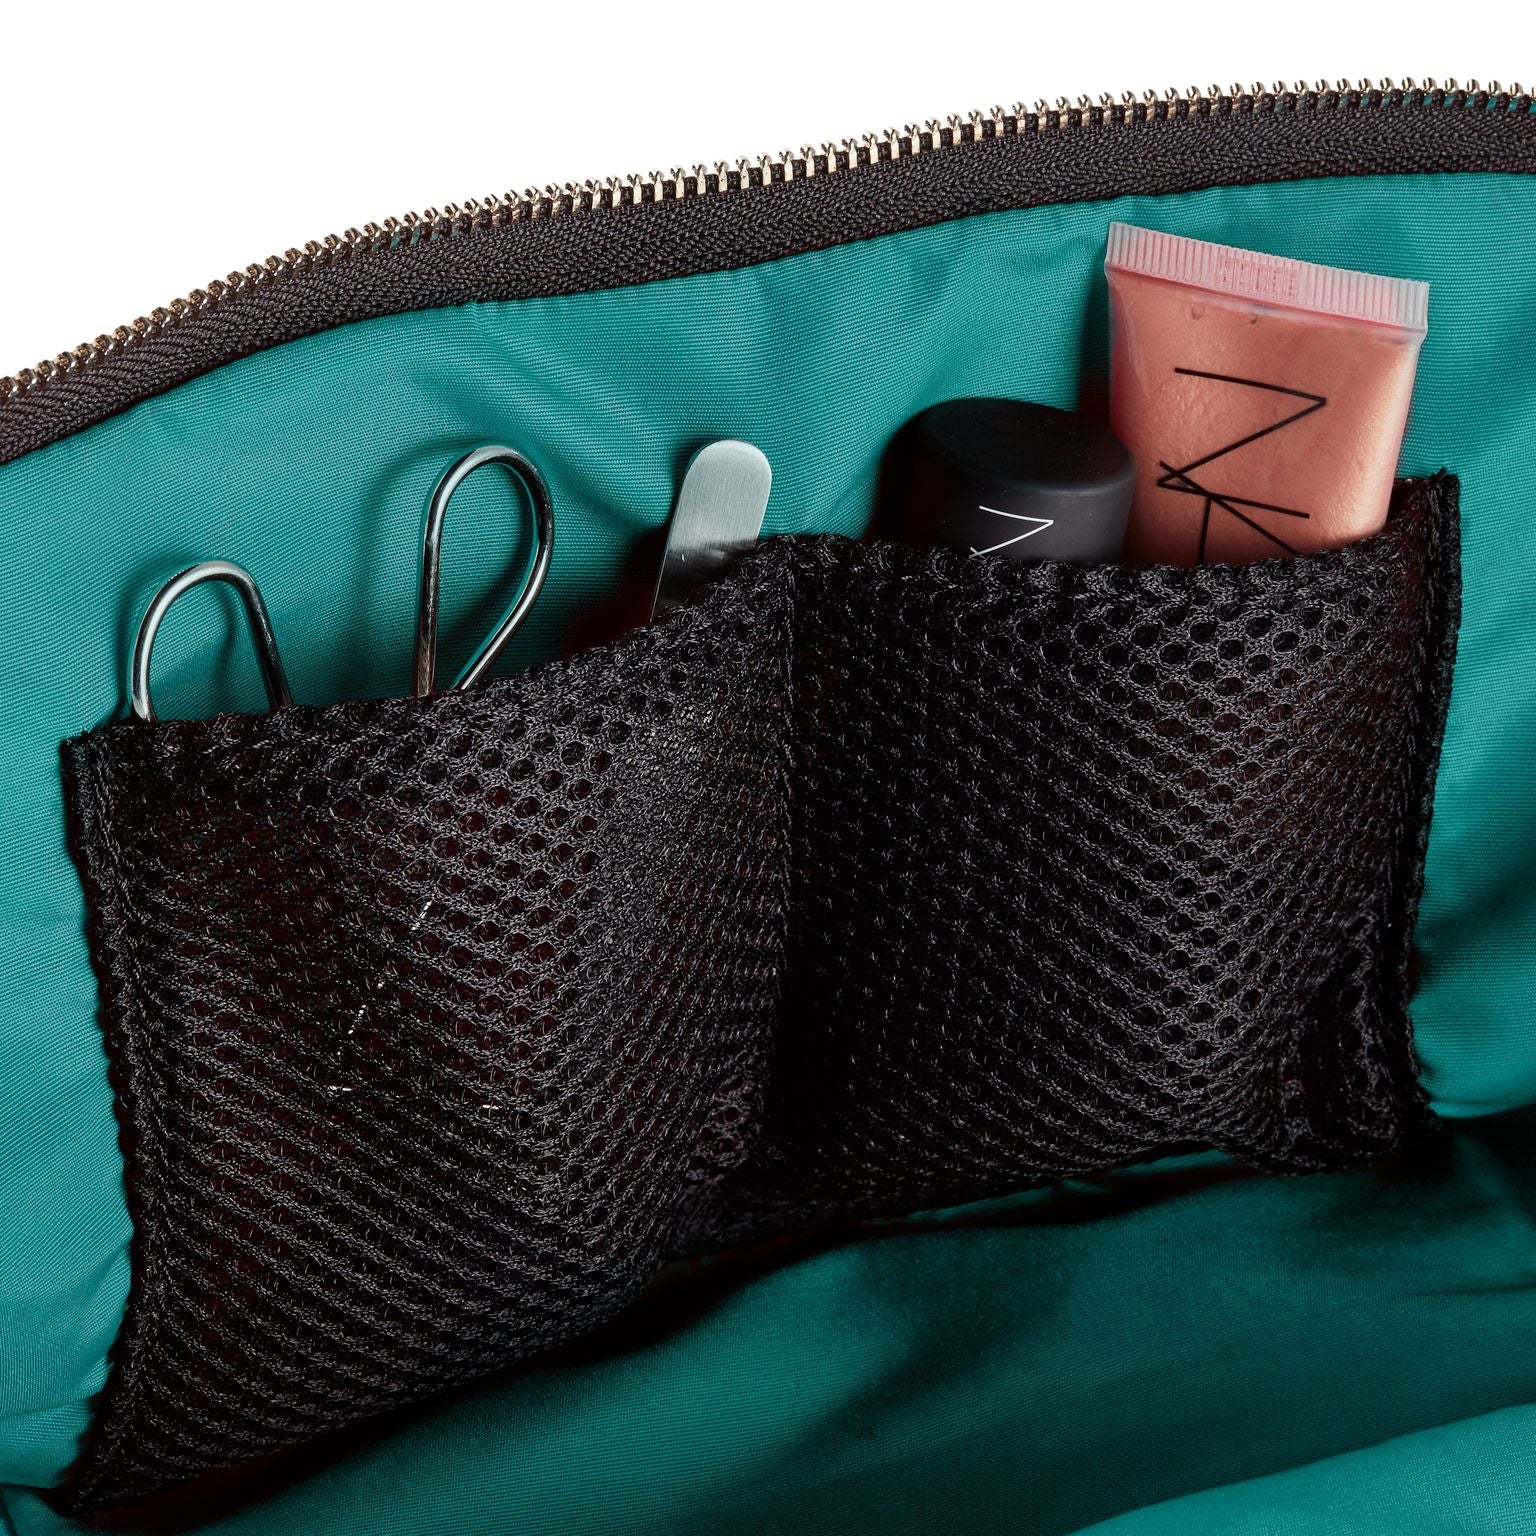 KUSSHI Signature Makeup Bag Black Fabric with Green Interior